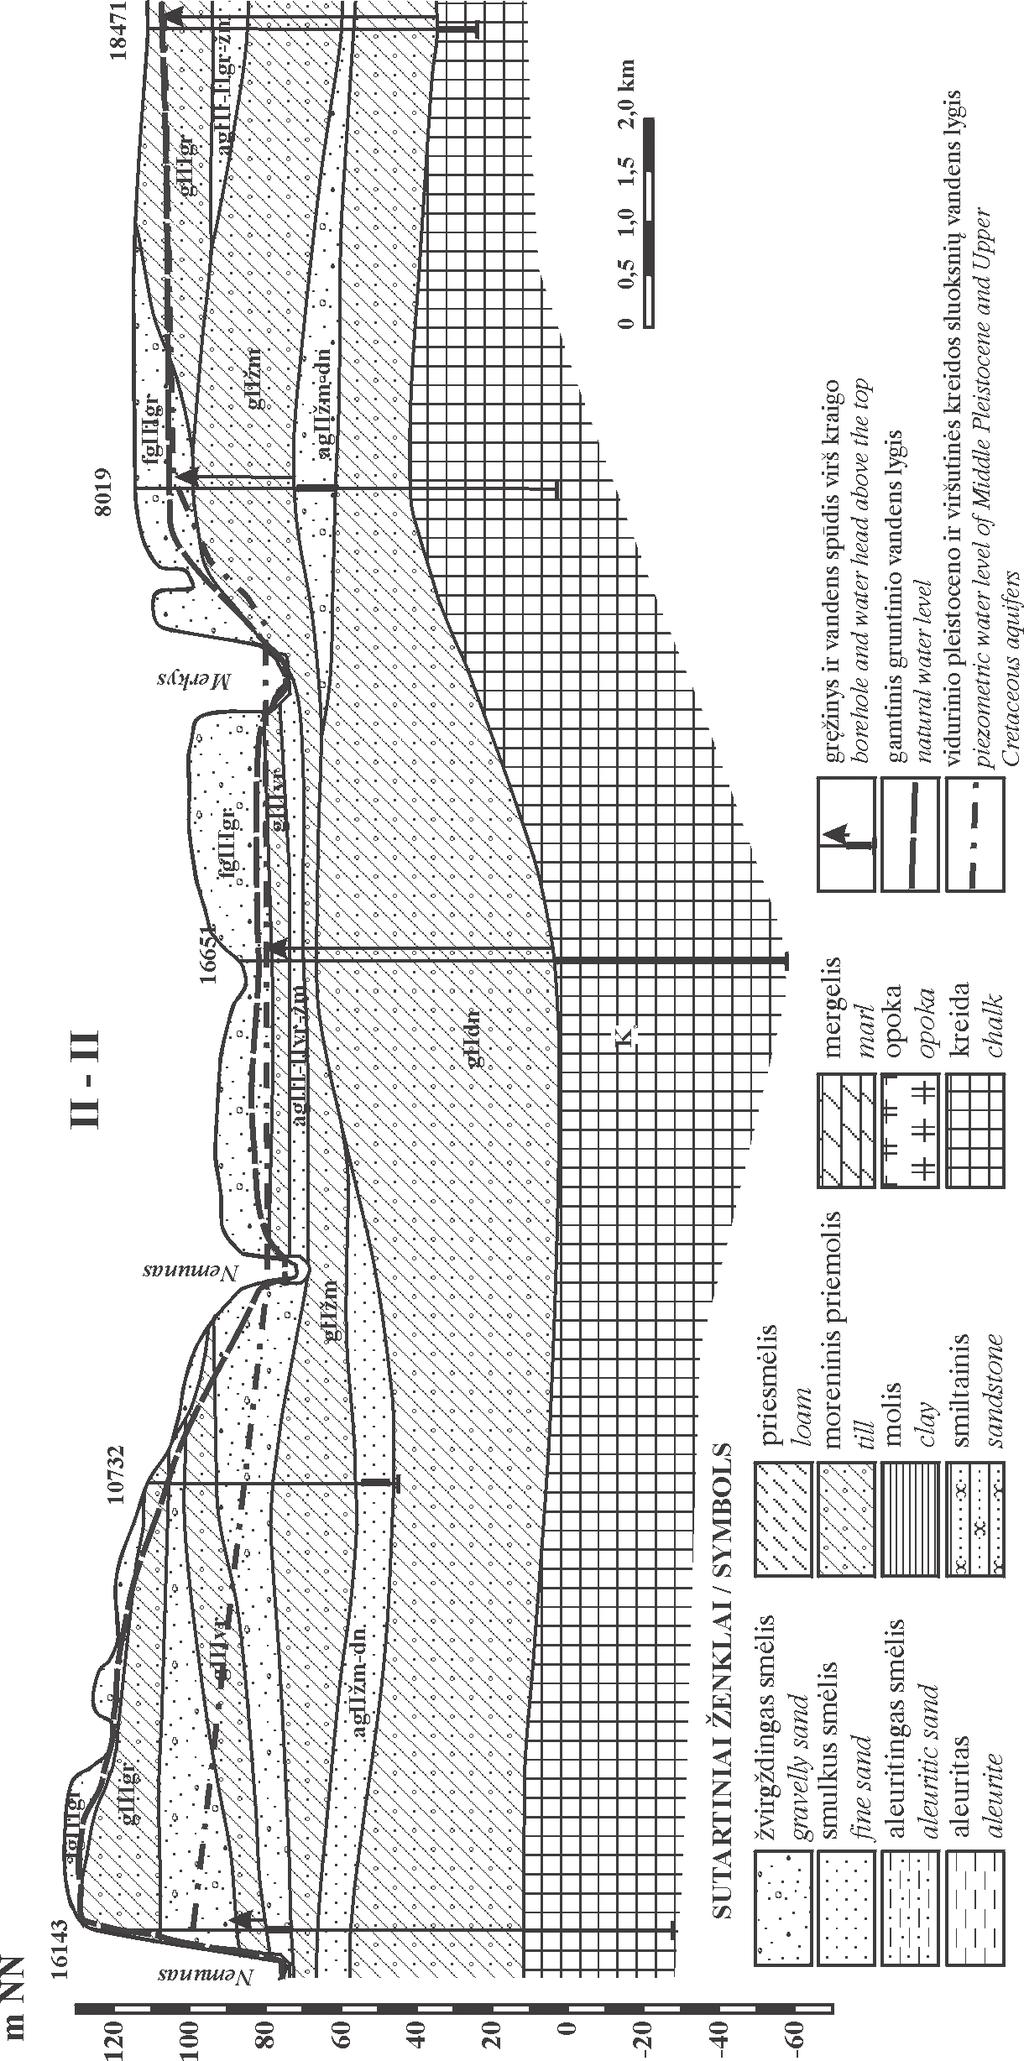 62 5 pav. Hidrogeologinis profilis II-II. Pjūvio kryptis ir stratigrafinai sutartiniai ženklai 1 ir 2 pav.